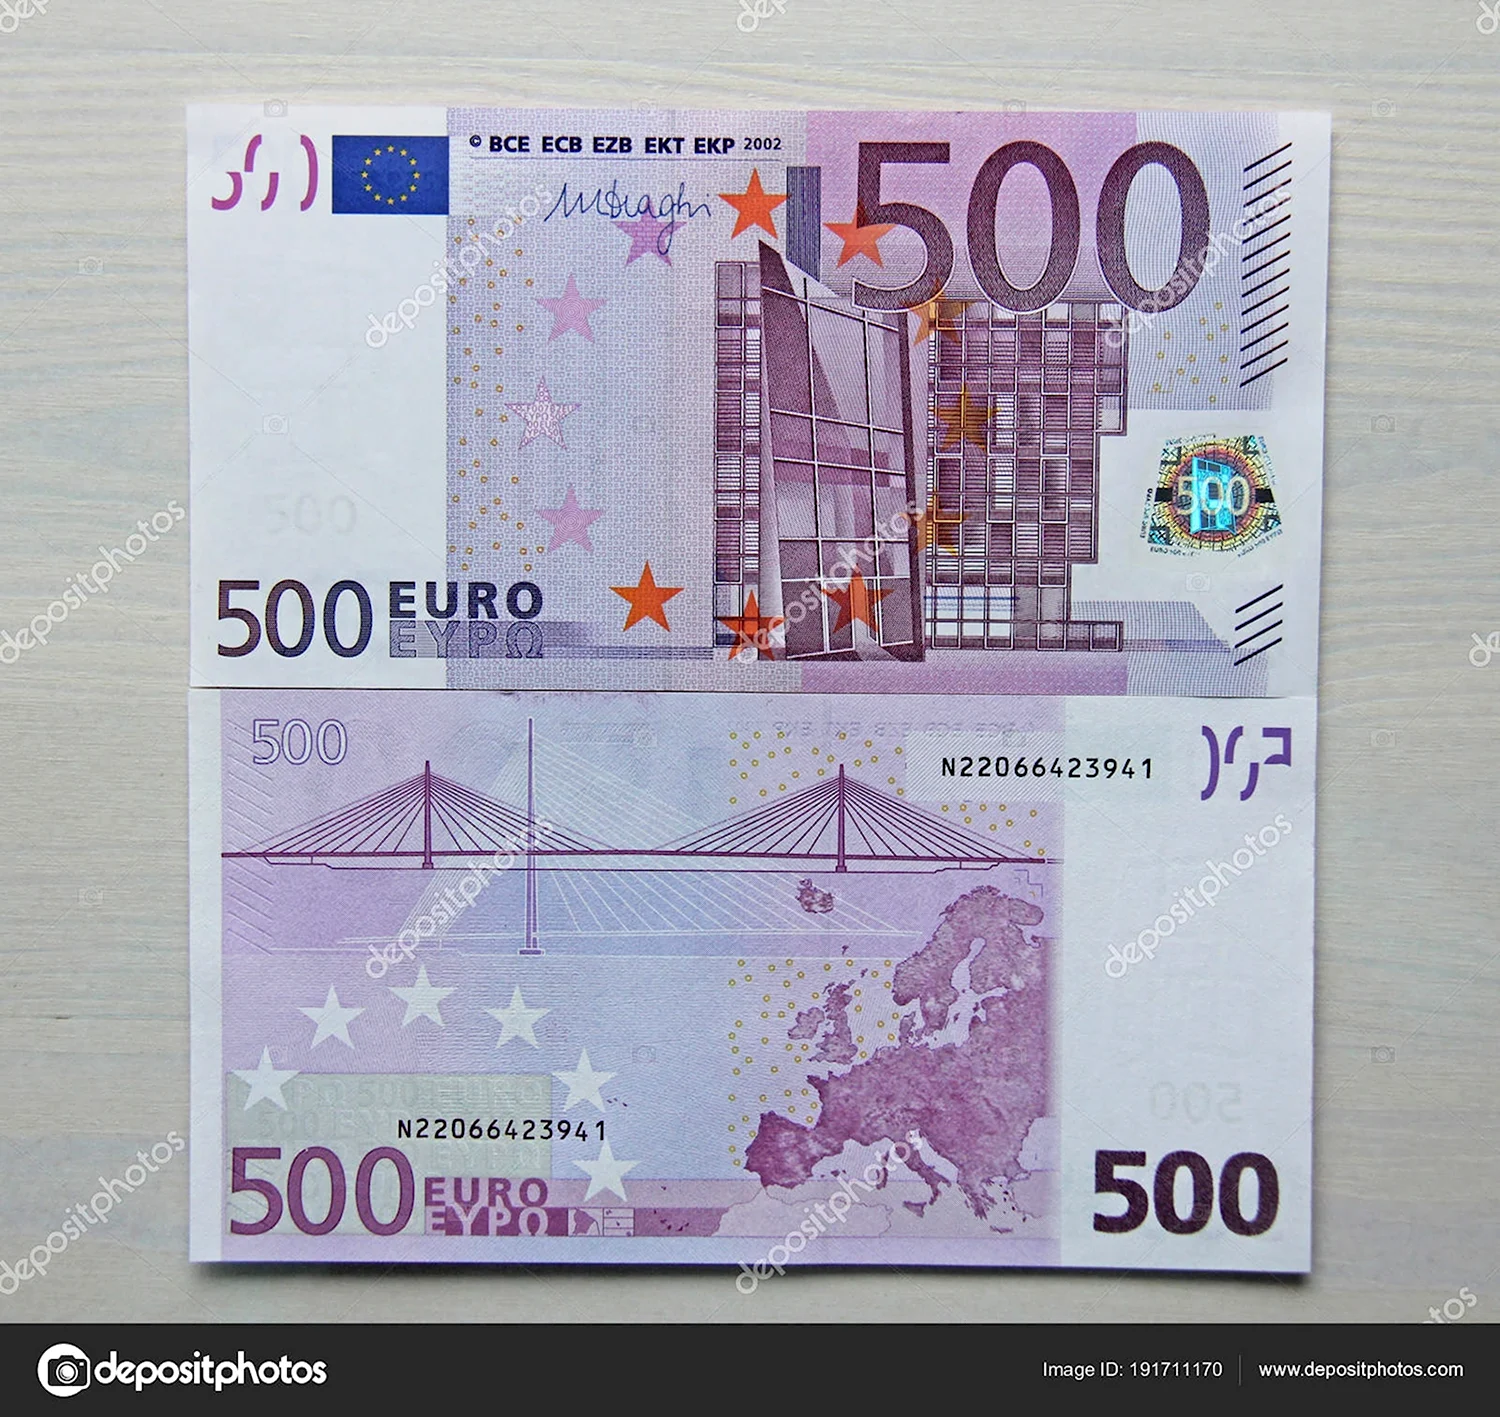 Как выглядит купюра 500 евро